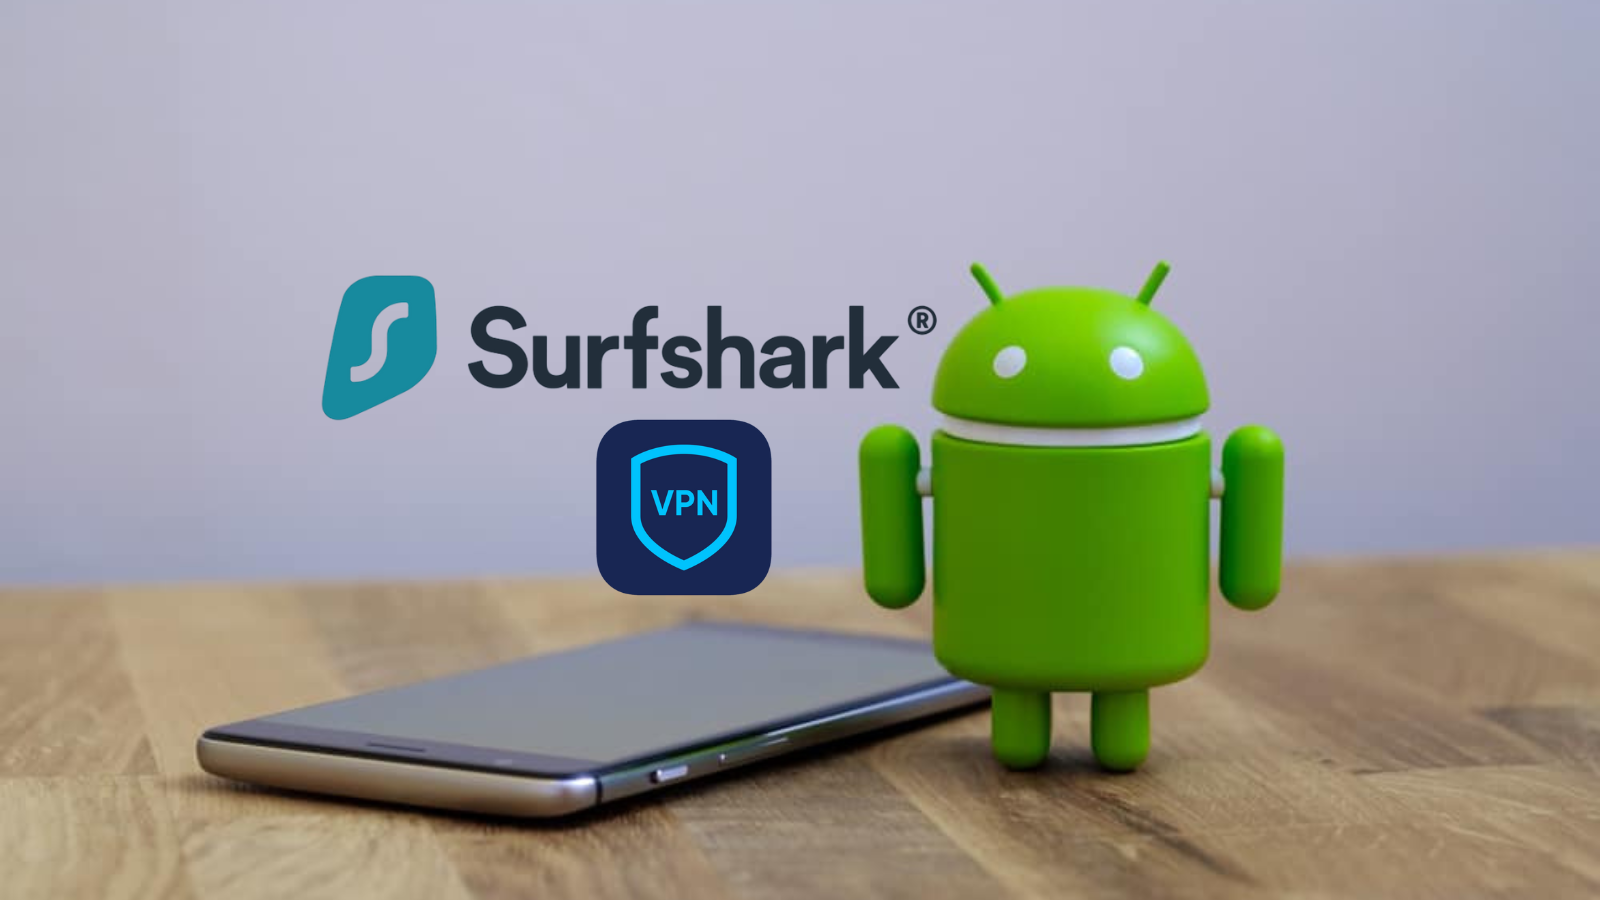 Como instalar o vpn da surfshark em seu celular android?. Veja como uma vpn no celular pode te ajudar a acessar conteúdos sem bloqueio, em qualquer país, e ainda aumentar a segurança ao acessar a internet